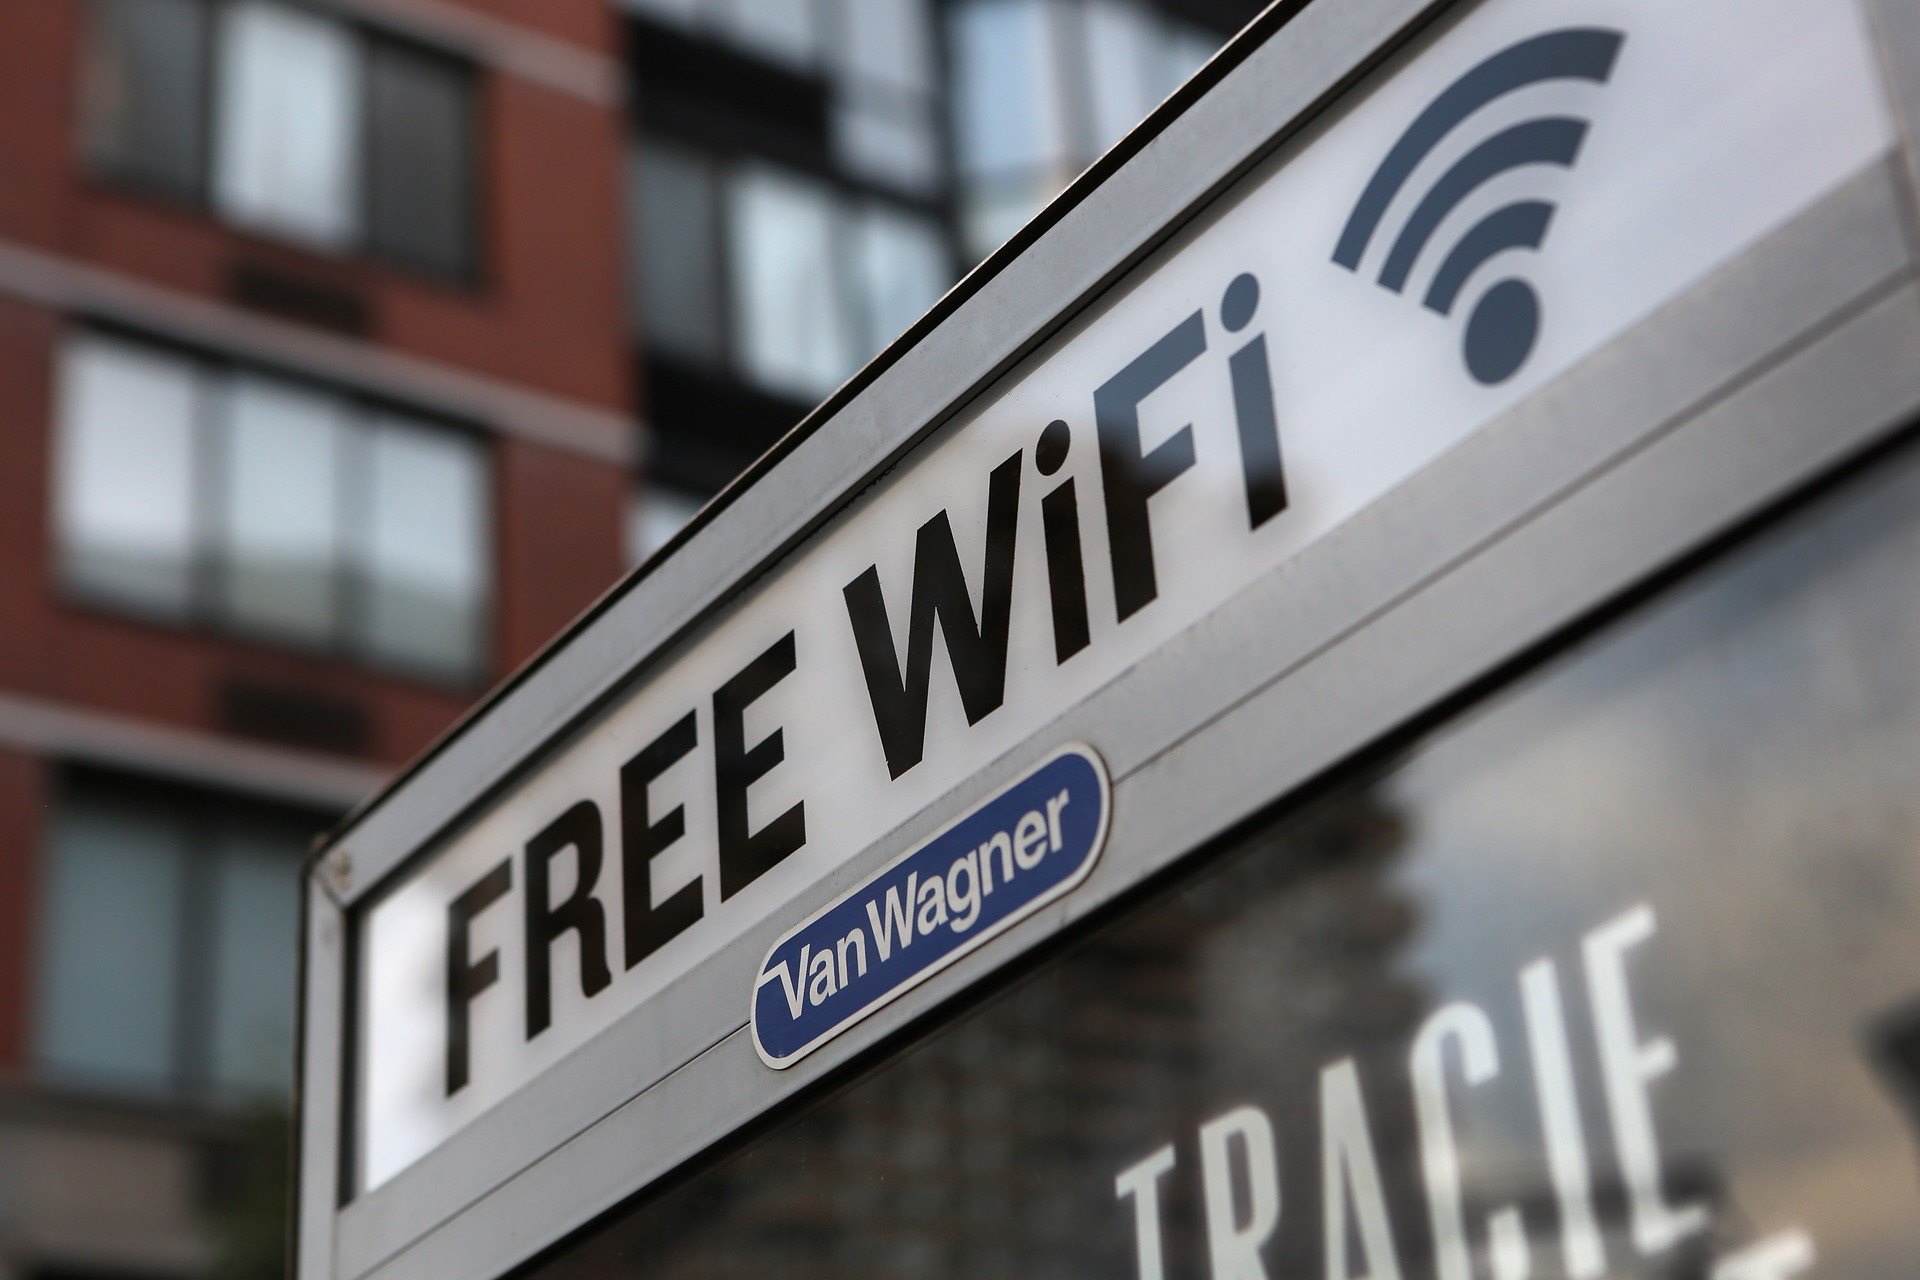 Como conseguir WiFi gratuito em lugares públicos para economizar